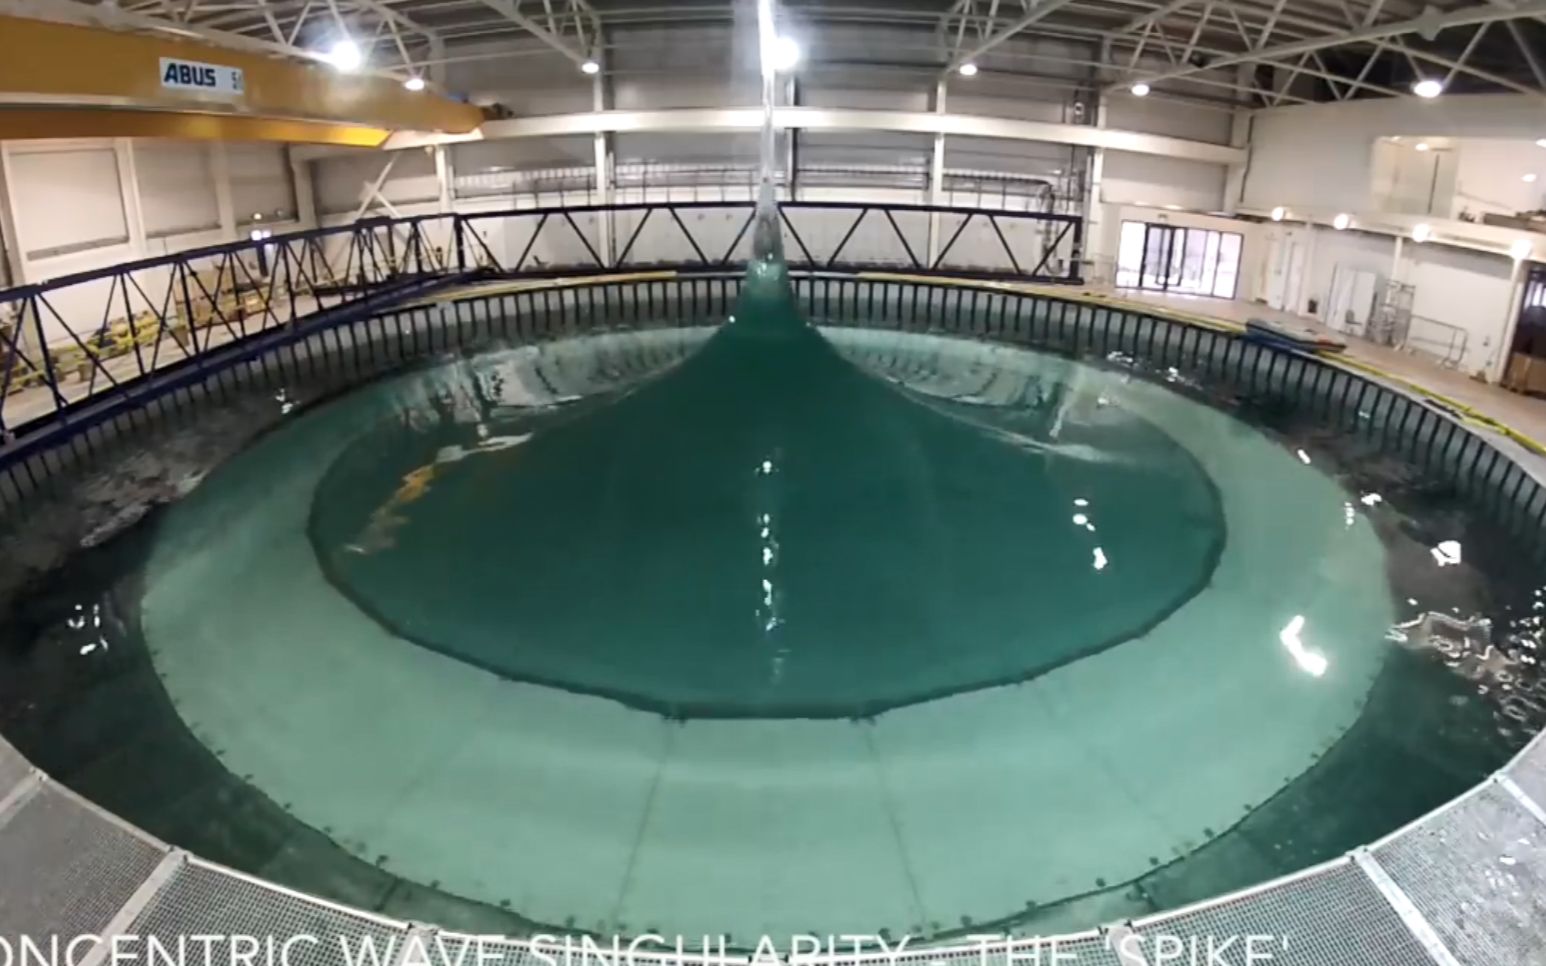 爱丁堡大学新建flowave游泳池 可模拟世界强海浪及洋流